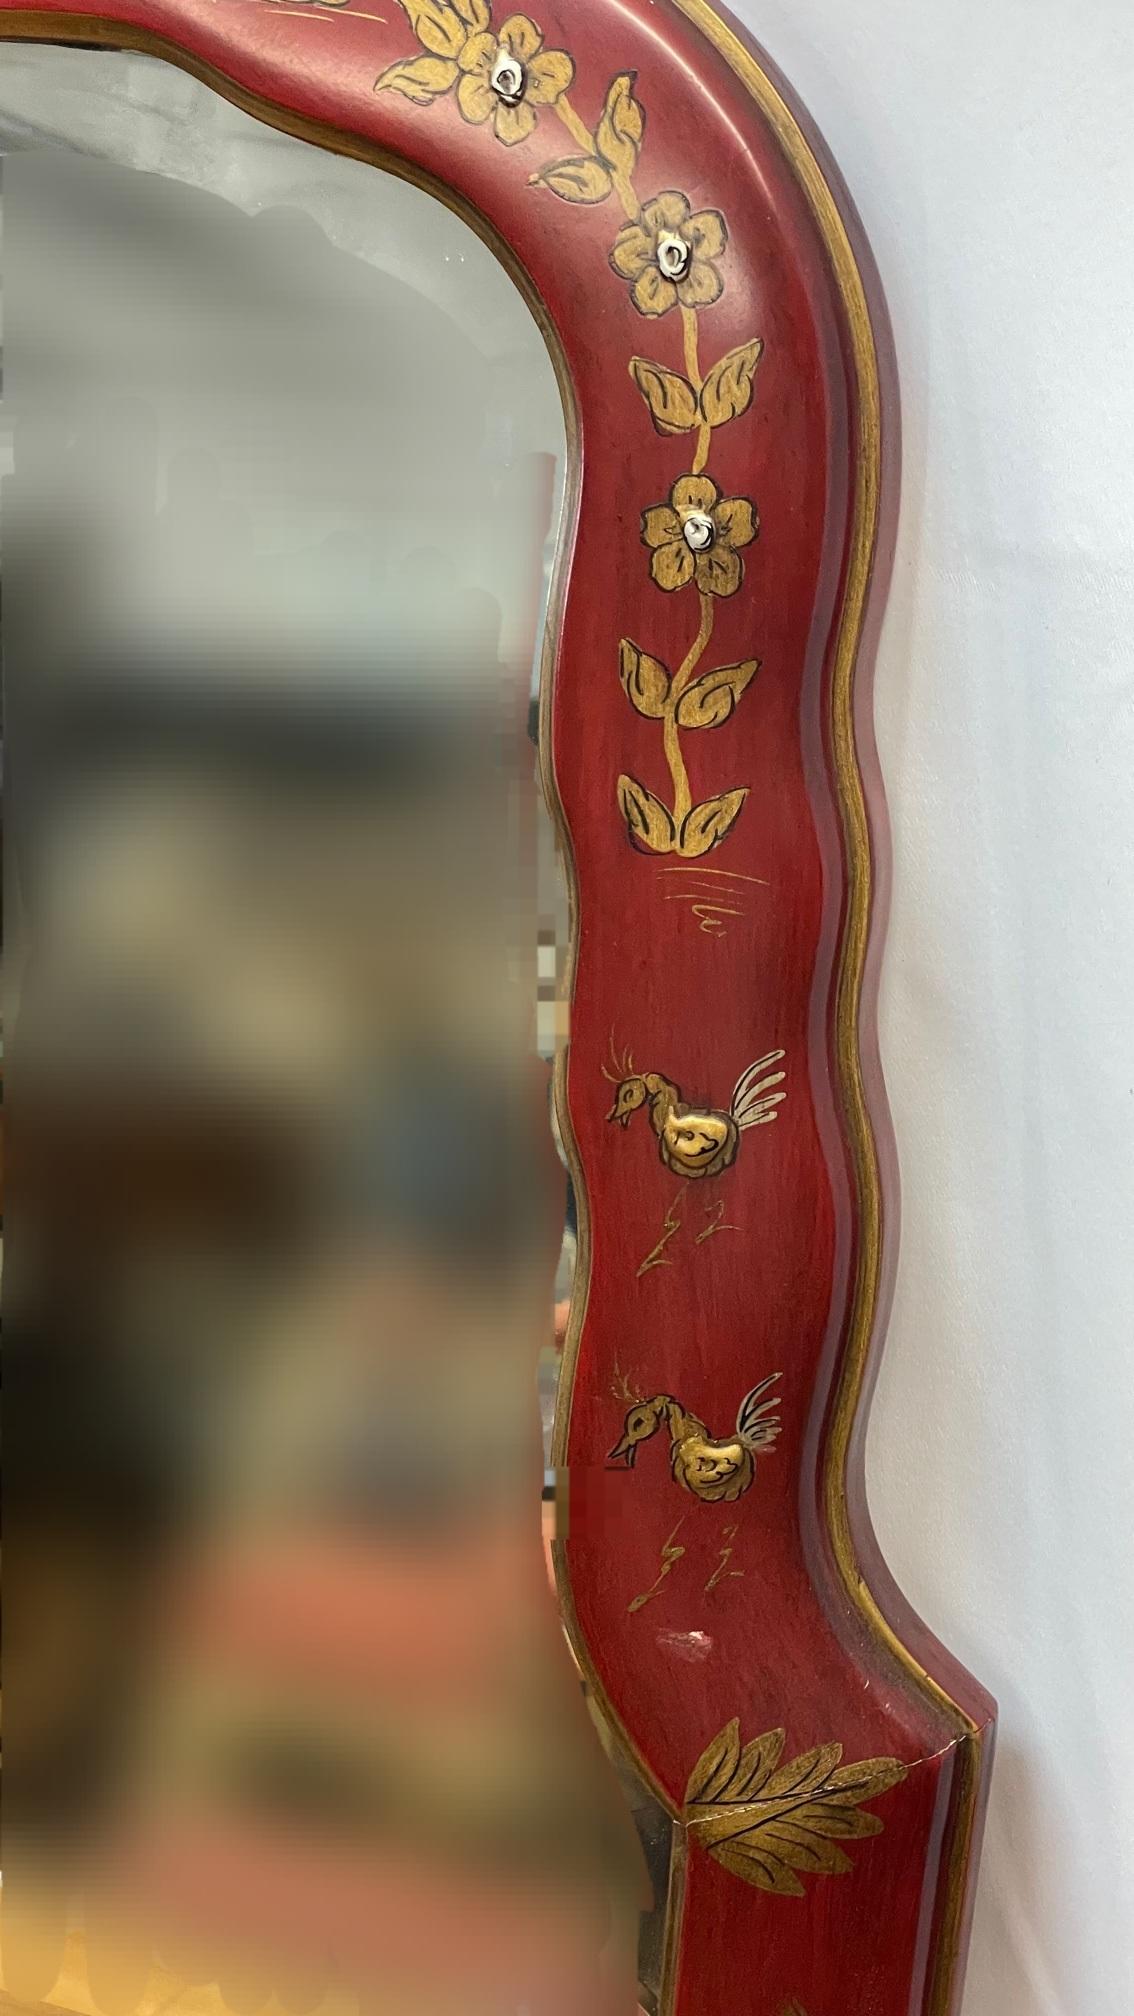 Lackierter Spiegel im Queen Anne-Stil mit asiatischem Thema
Spiegel guter Qualität mit abgeschrägter Kante
Original Label von Gumps verso